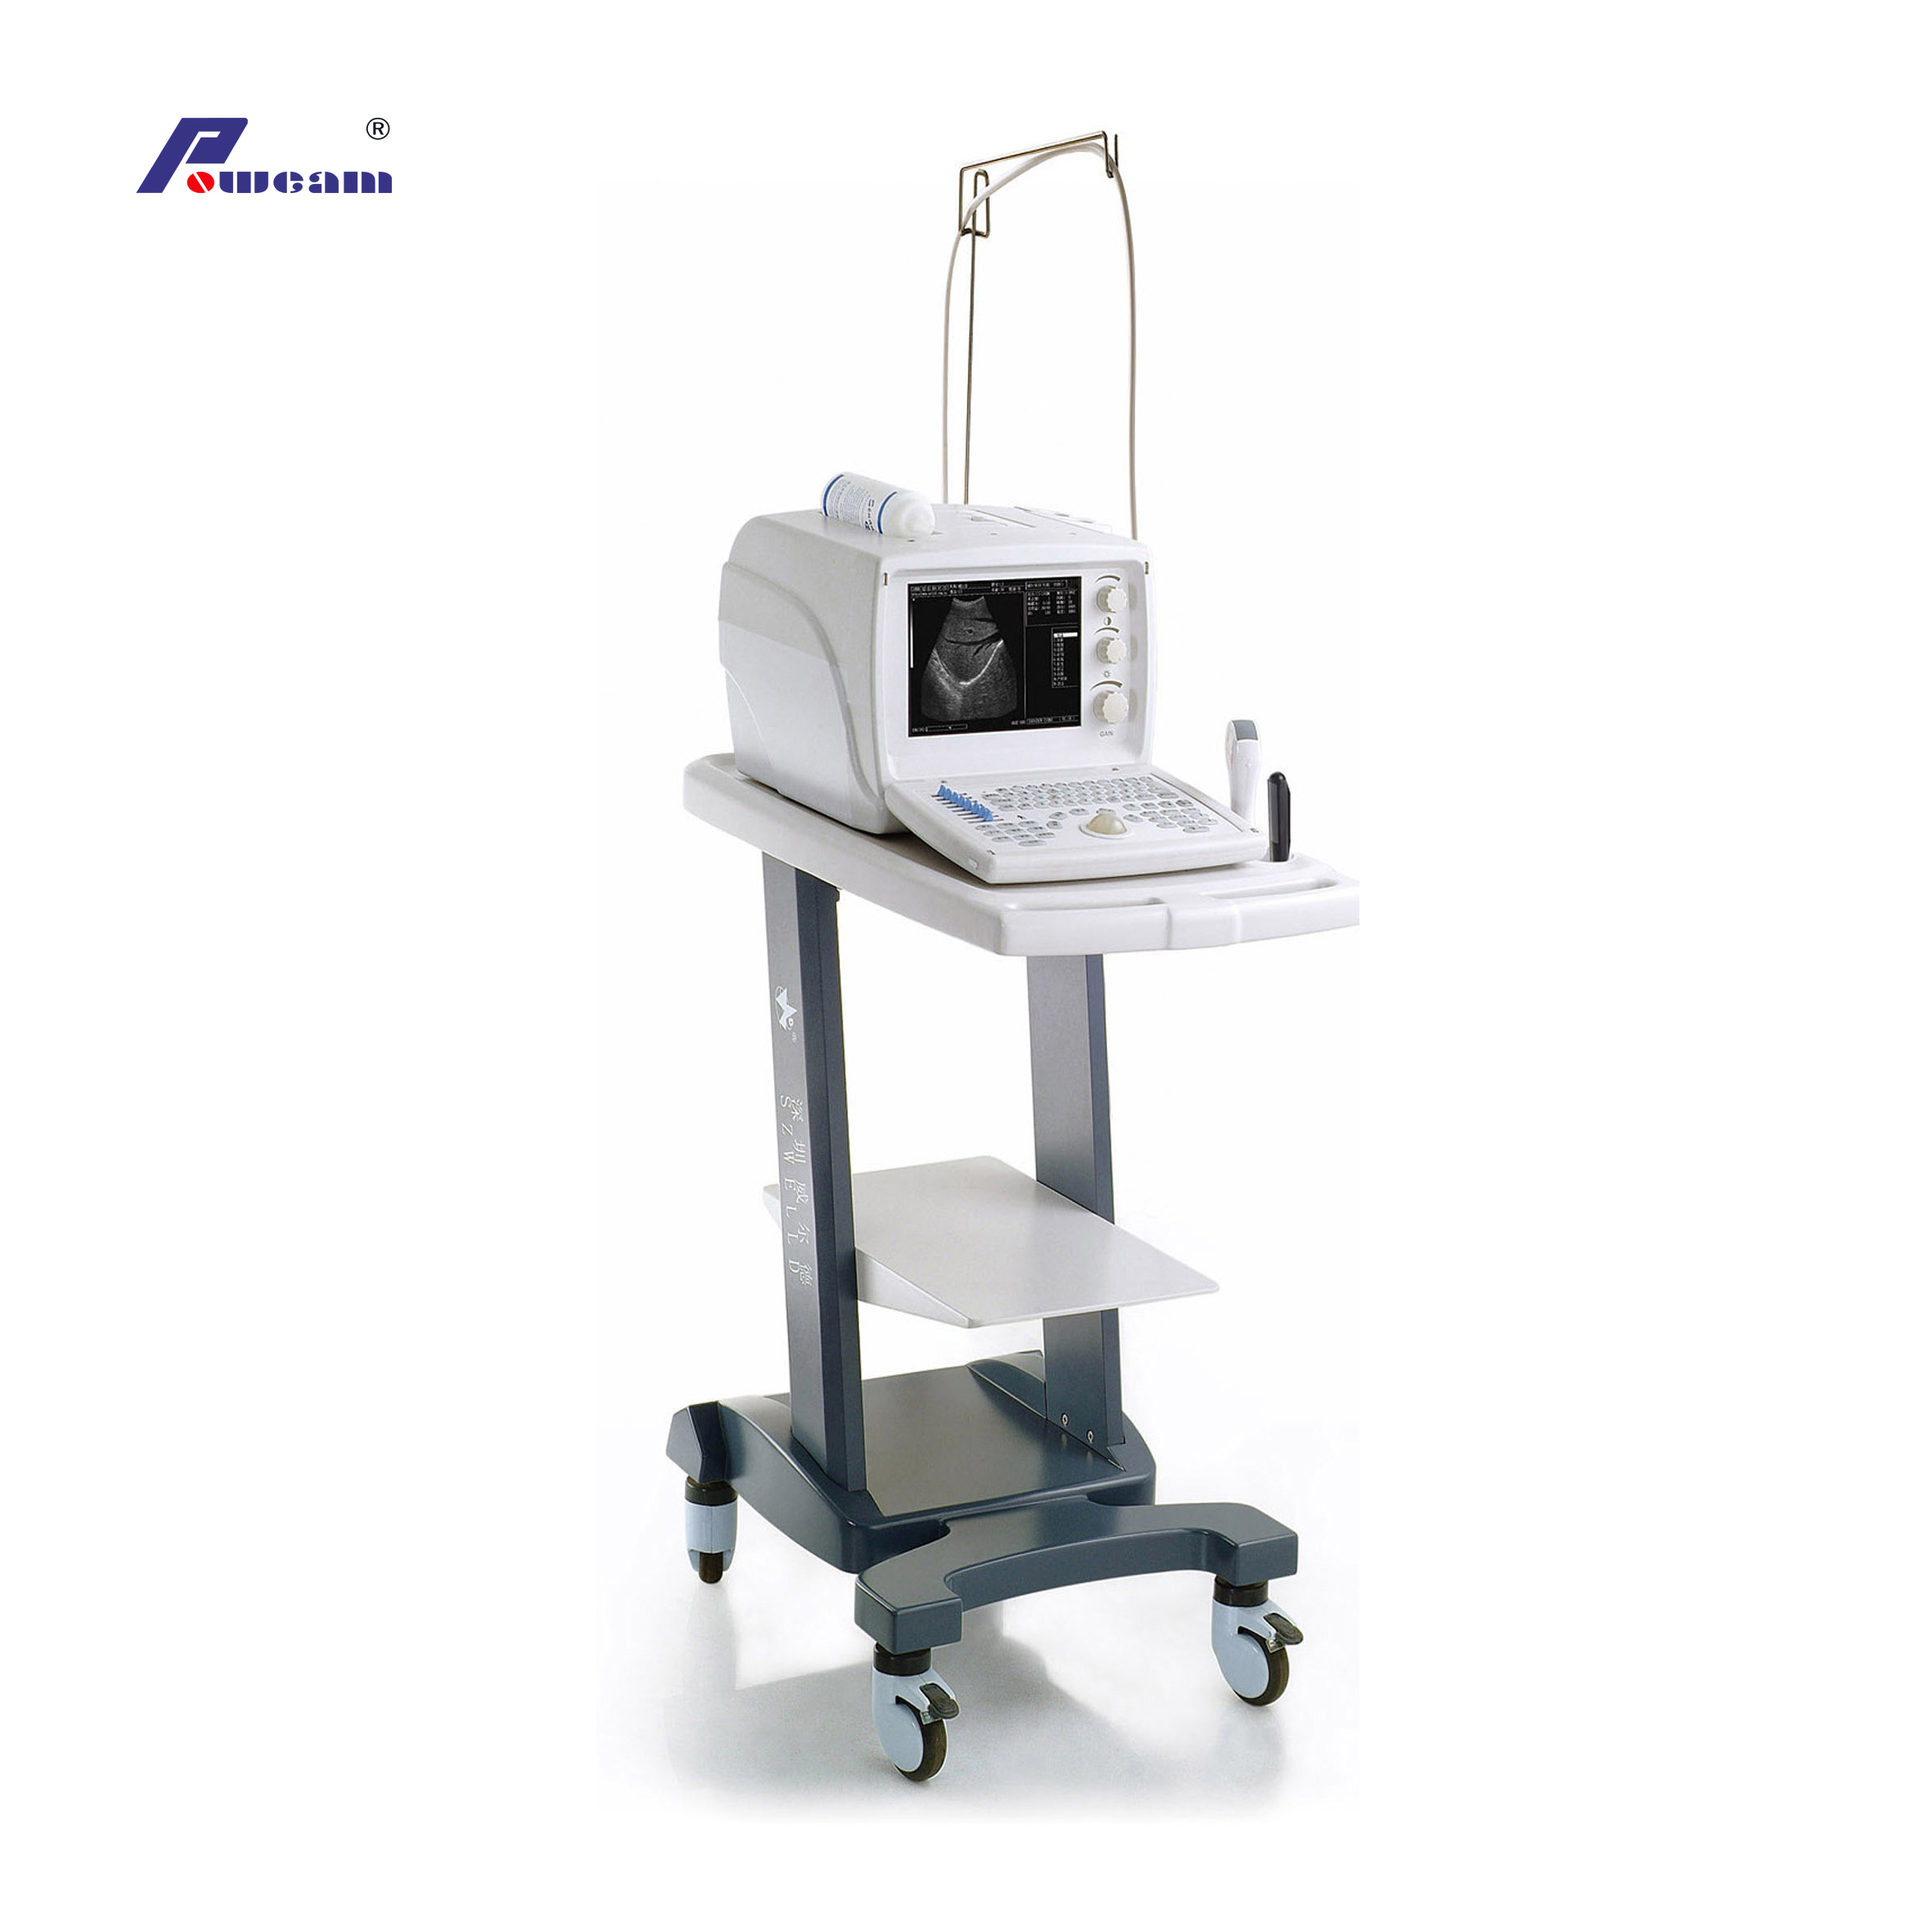 Cheapest portable veterinary Digital Ultrasound Scanner